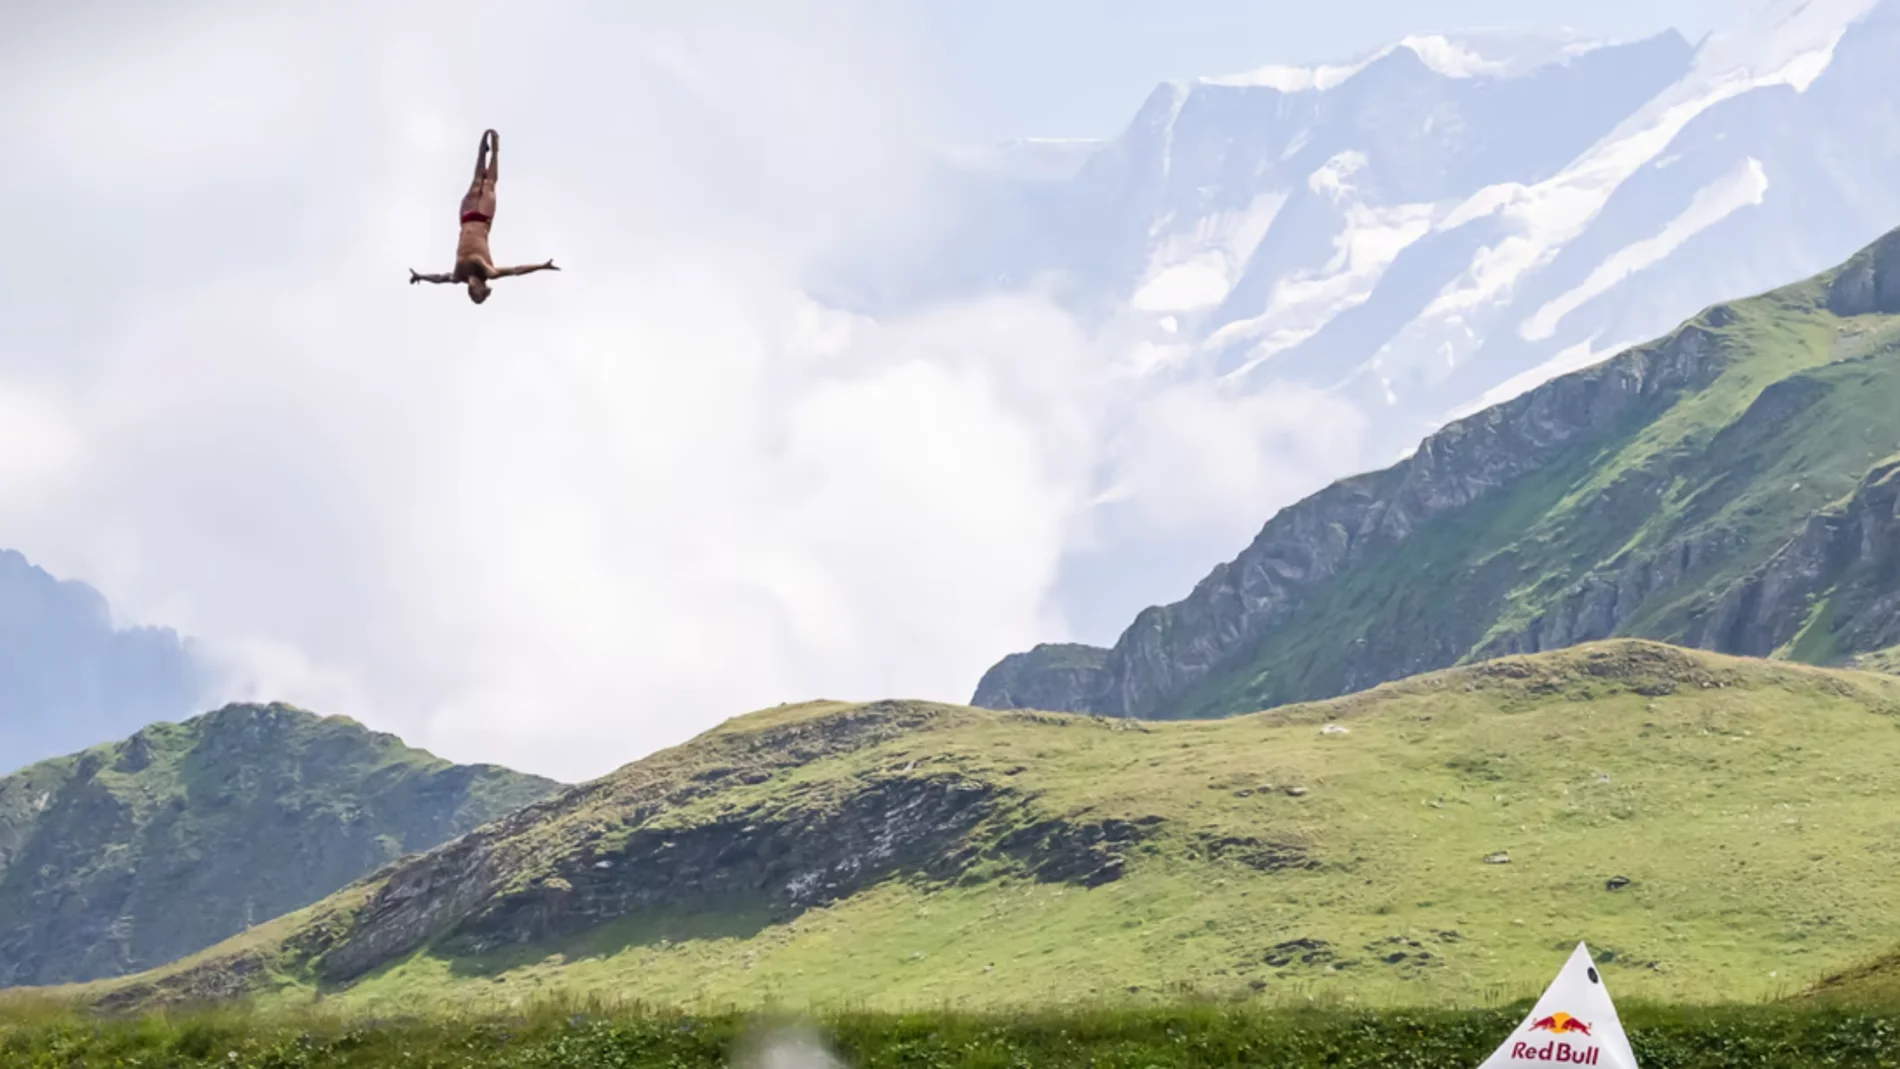 El increíble salto de Matthias Appenzeller en un lago helado de montaña en Suiza.